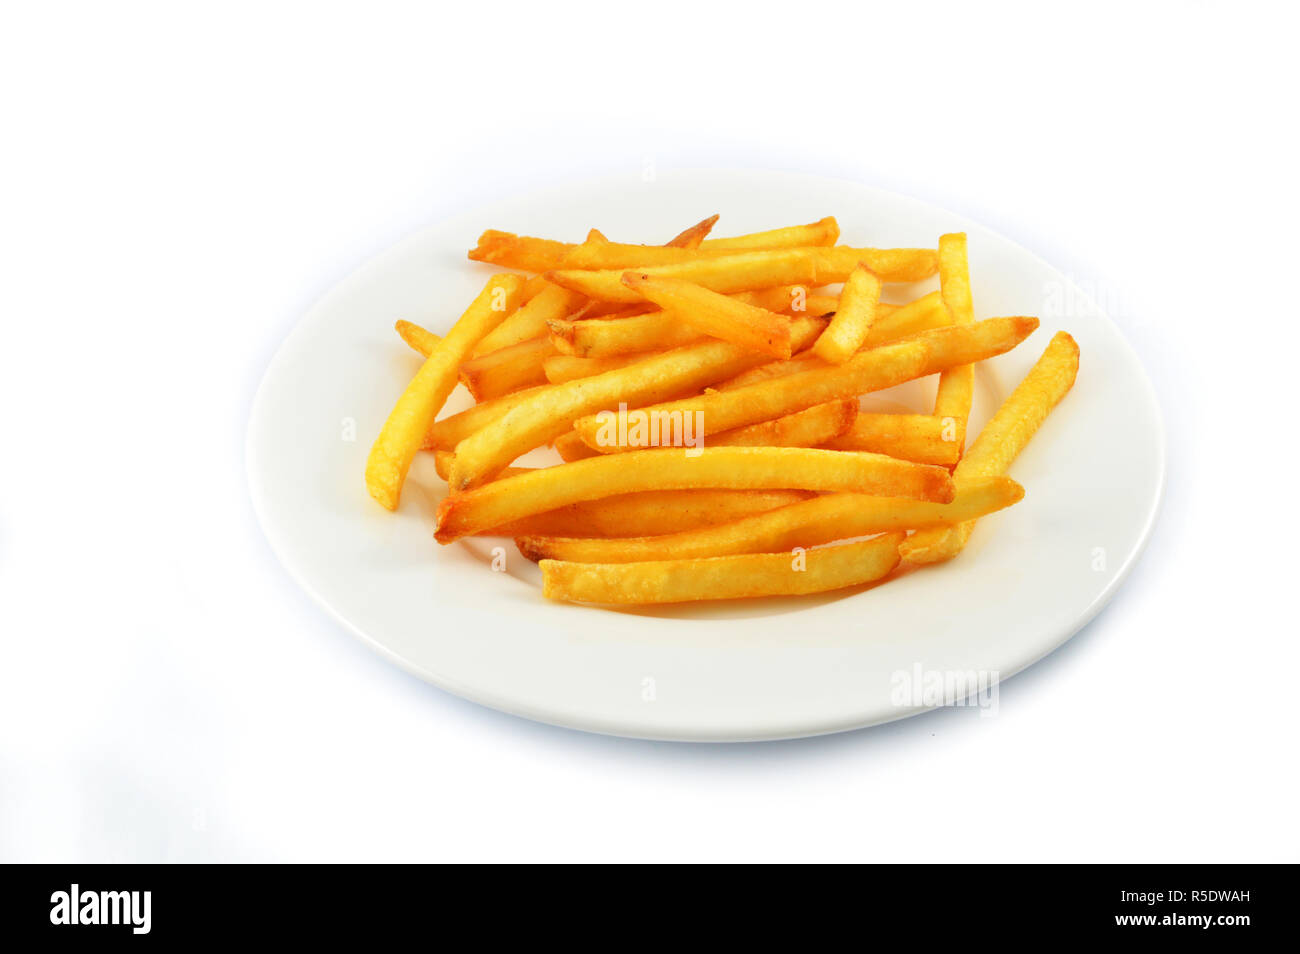 Frites de pommes de terre frites isolé / frites pour snack sur plaque blanche isolé sur fond blanc Banque D'Images